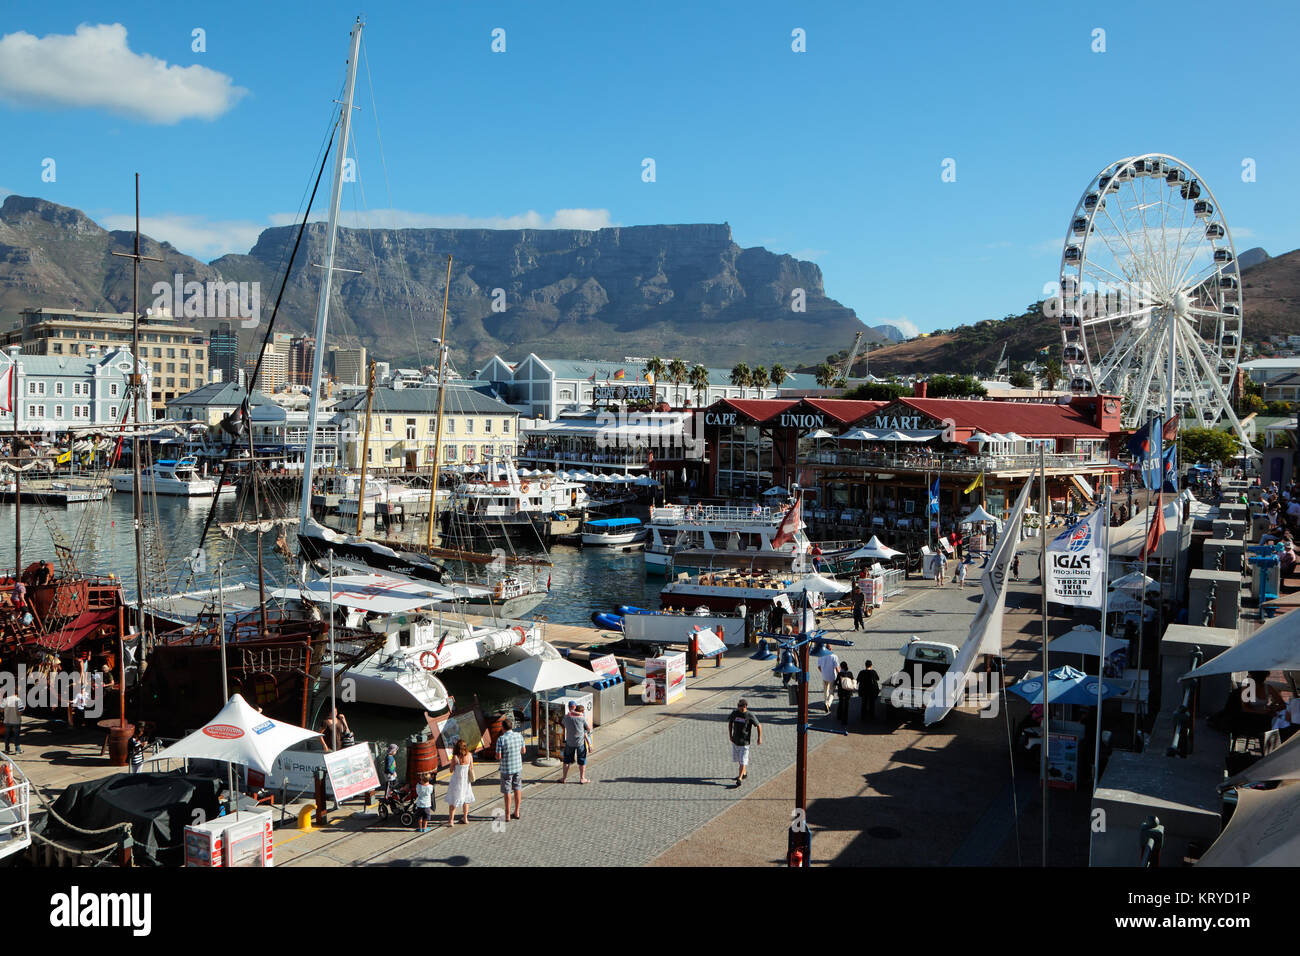 Kapstadt, Südafrika - 20. FEBRUAR 2012: Victoria und Alfred Waterfront, Hafen mit Booten, Geschäften, Restaurants und den berühmten Tafelberg - ein Stockfoto